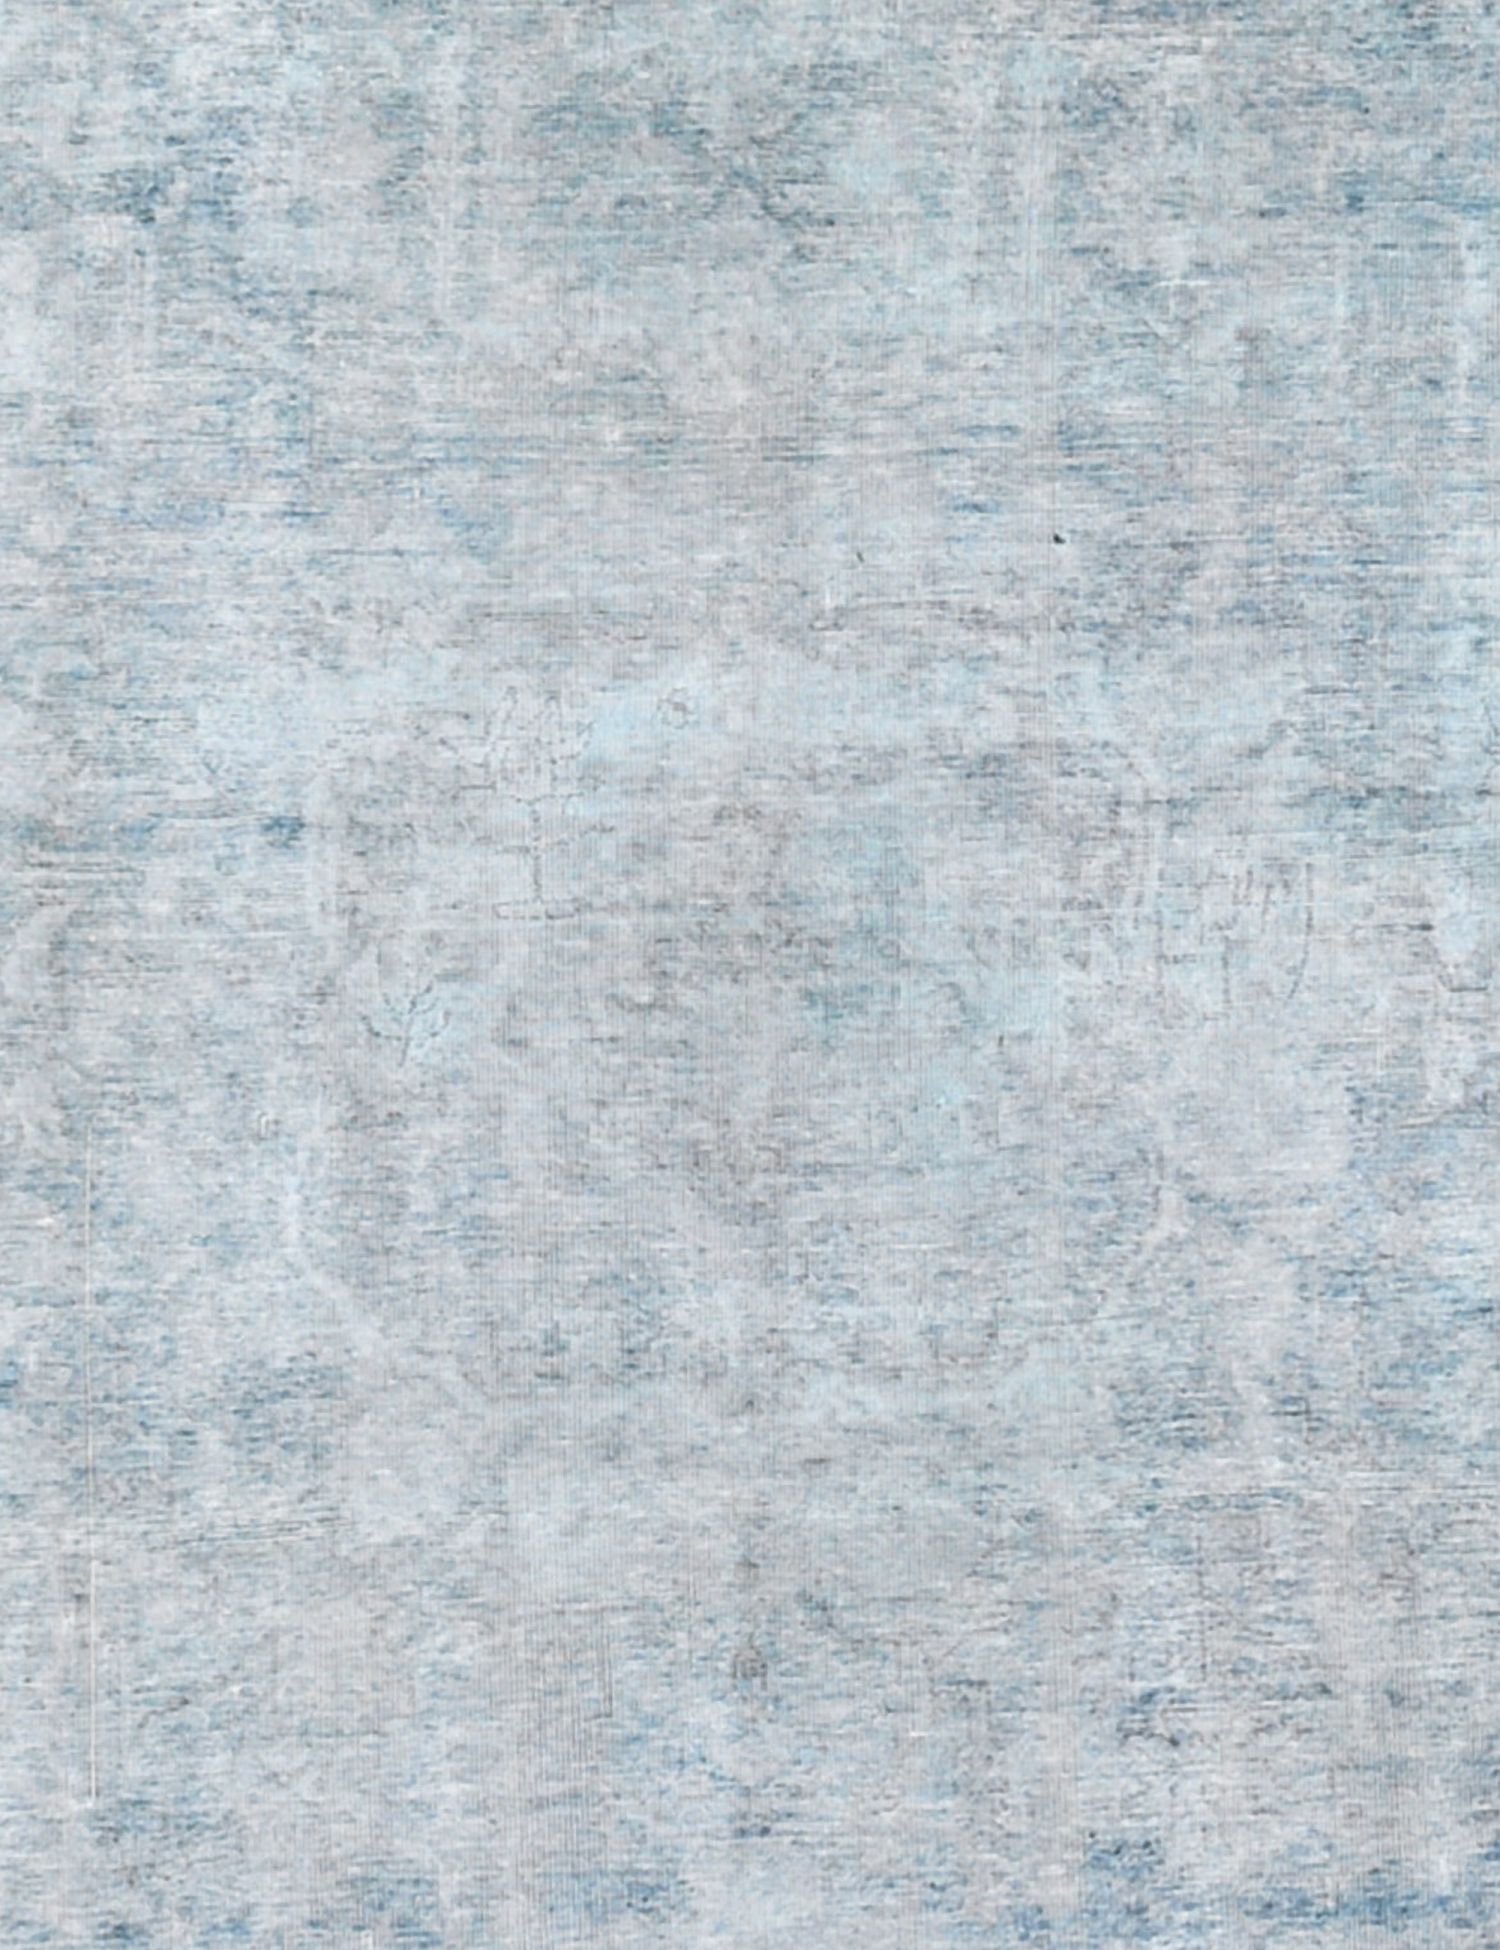 Persischer vintage teppich  blau <br/>248 x 172 cm